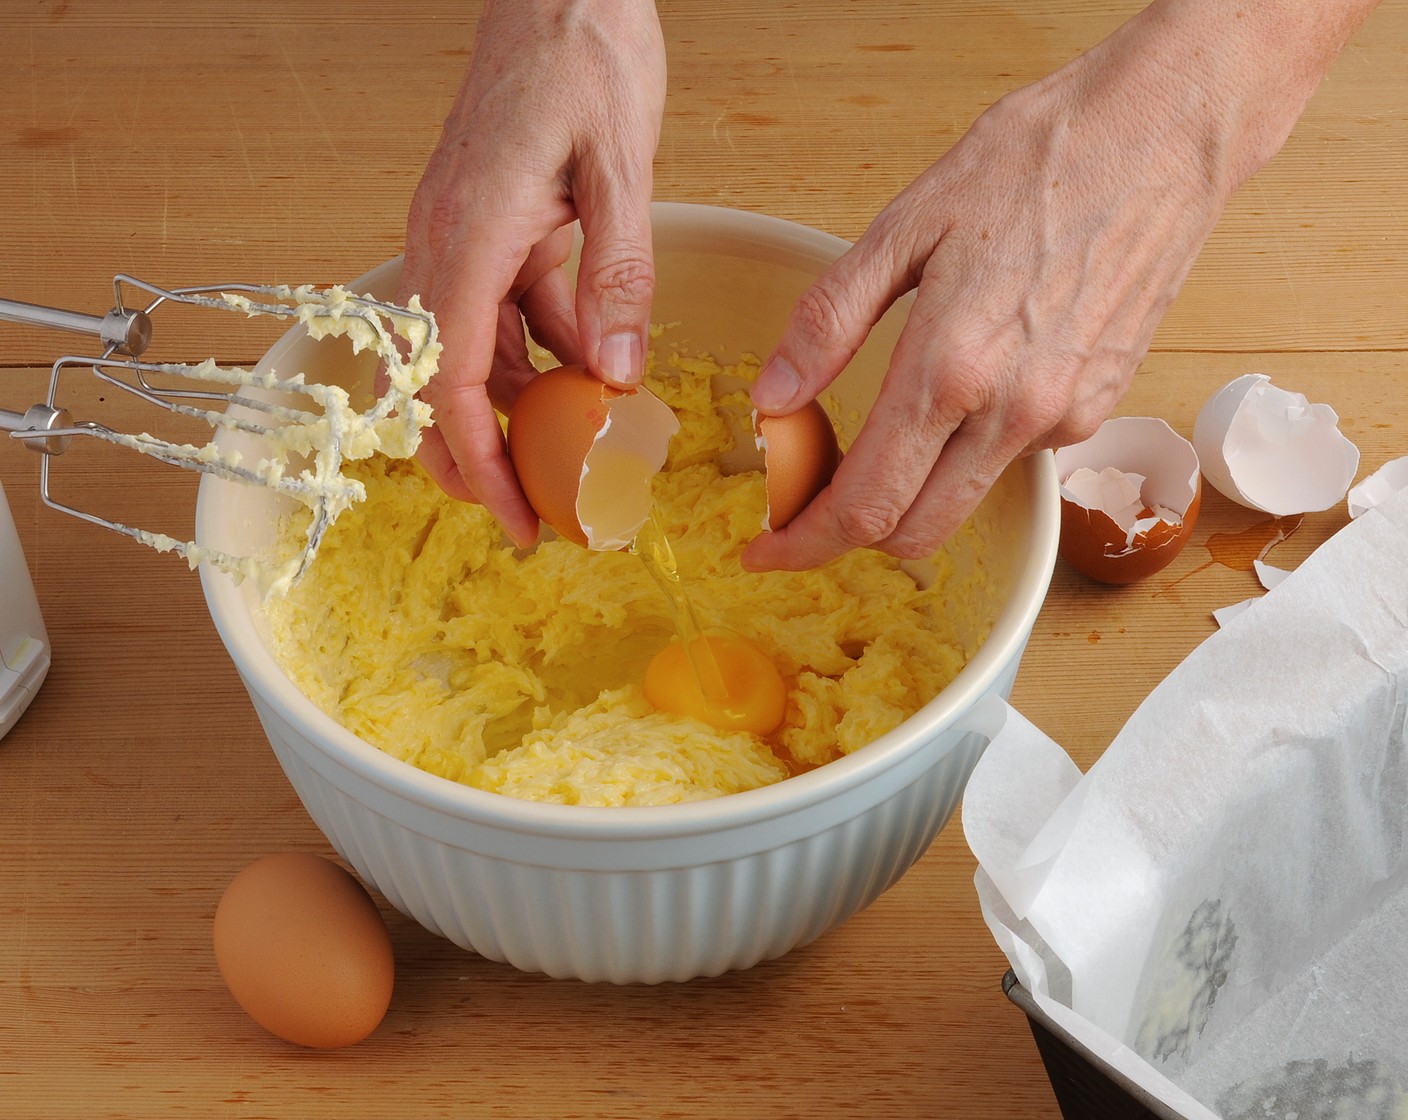 Schritt 2 Teig: Butter (150 g) mit dem Mixer rühren, bis sich Spitzchen bilden. Zucker (180 g), Salz (1 Pr.) und Zitronenabrieb (1) dazurühren. Eier (4) nach und nach dazugeben, rühren, bis die Masse gut gemischt und cremig ist. Mehl (180 g) und Backpulver (1 TL) mischen, beigeben und zu einer homogenen Masse vermischen.